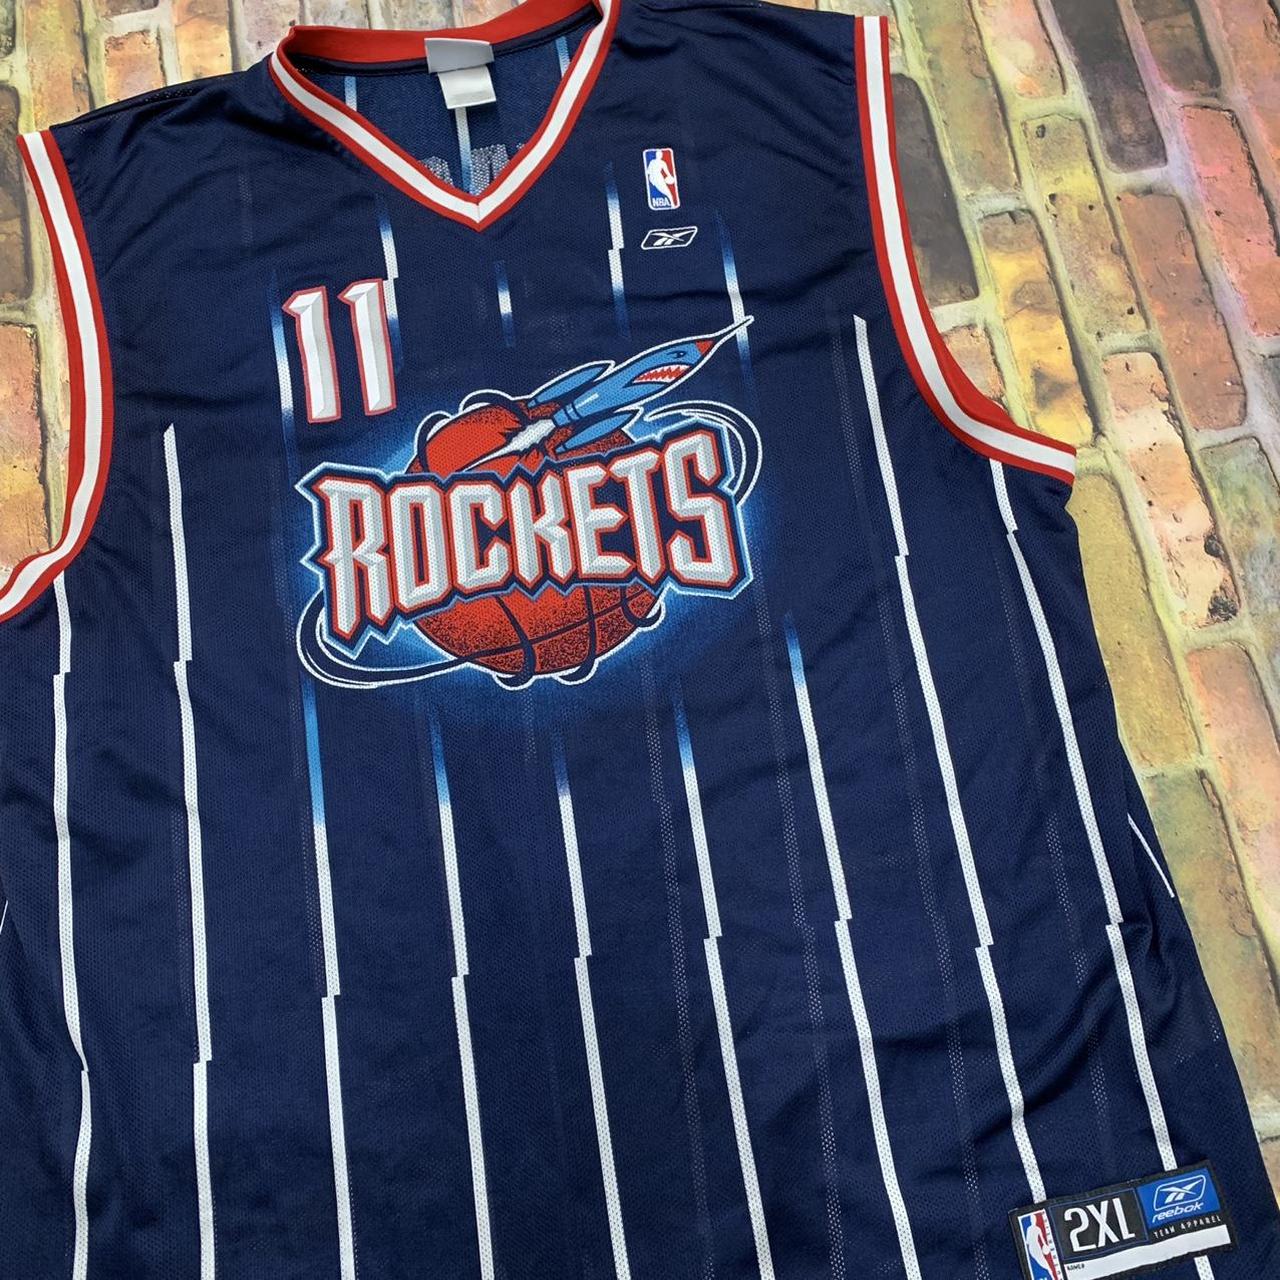 Vintage NBA Rockets Yao Ming Jersey Dark Blue, - Depop